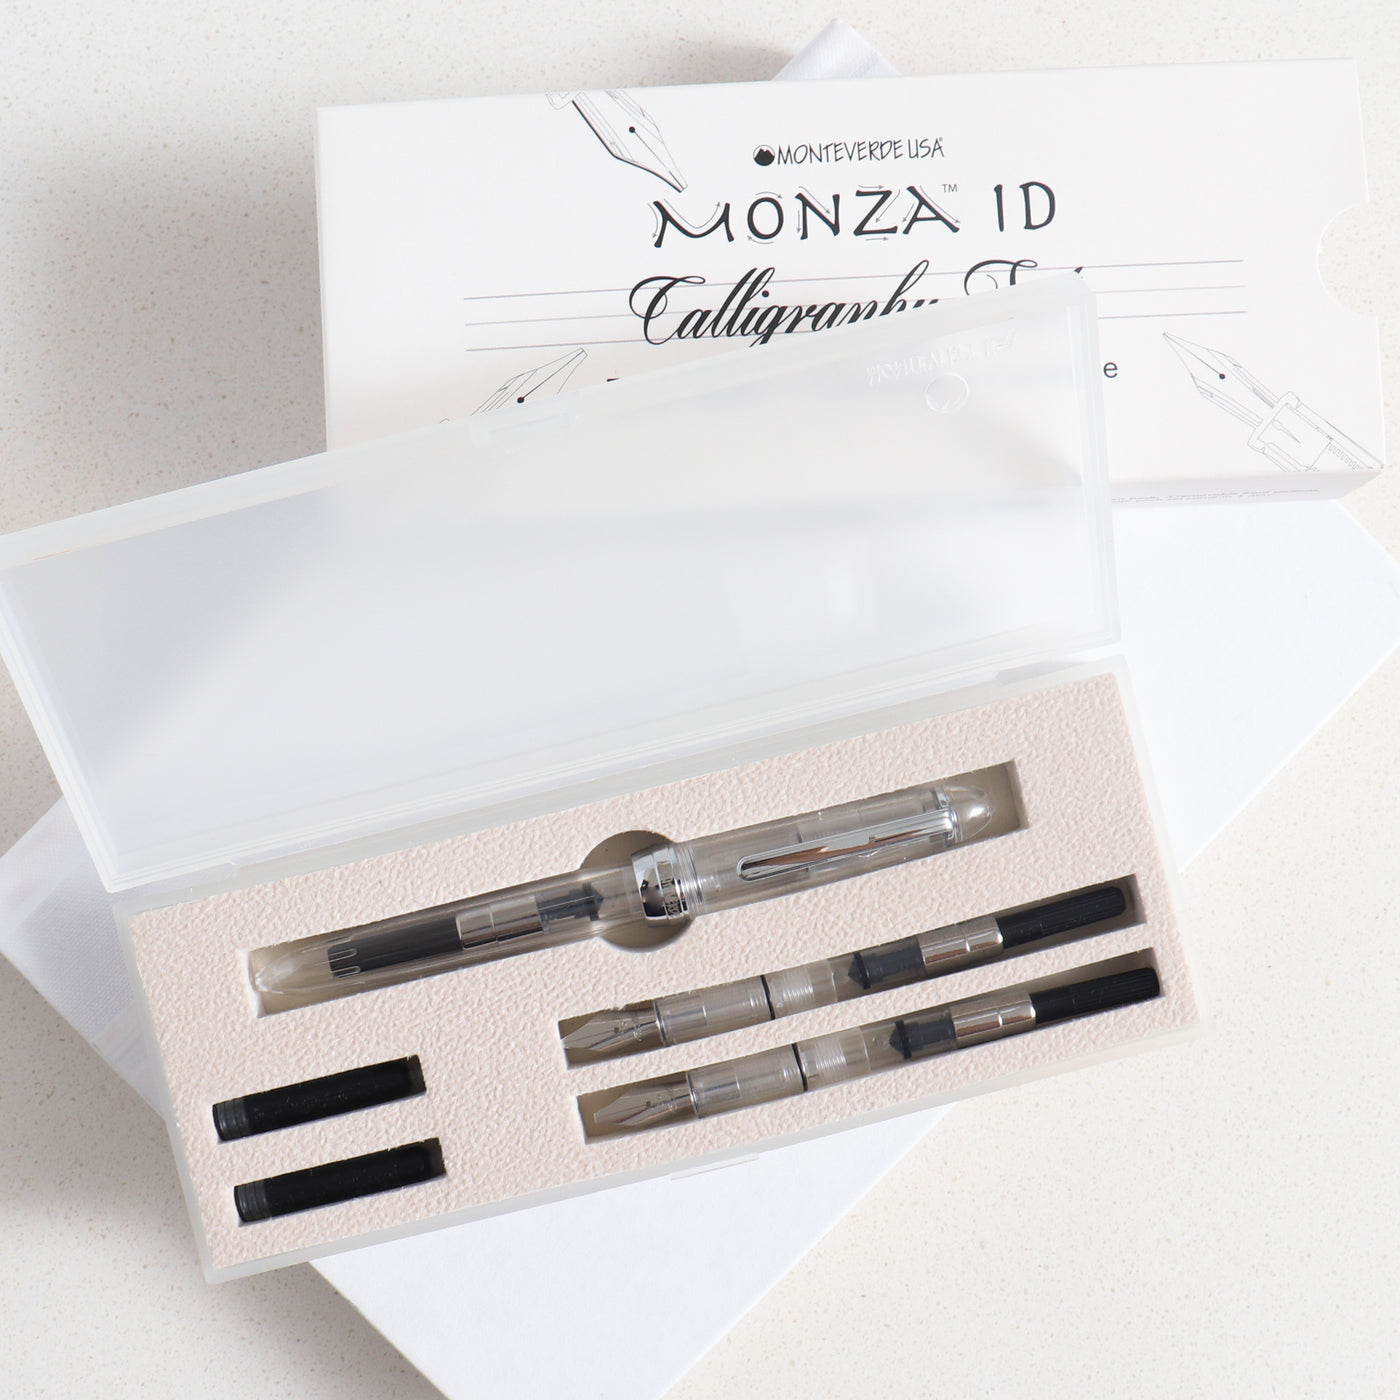 Monteverde Monza ID Calligraphy Fountain Pen Set